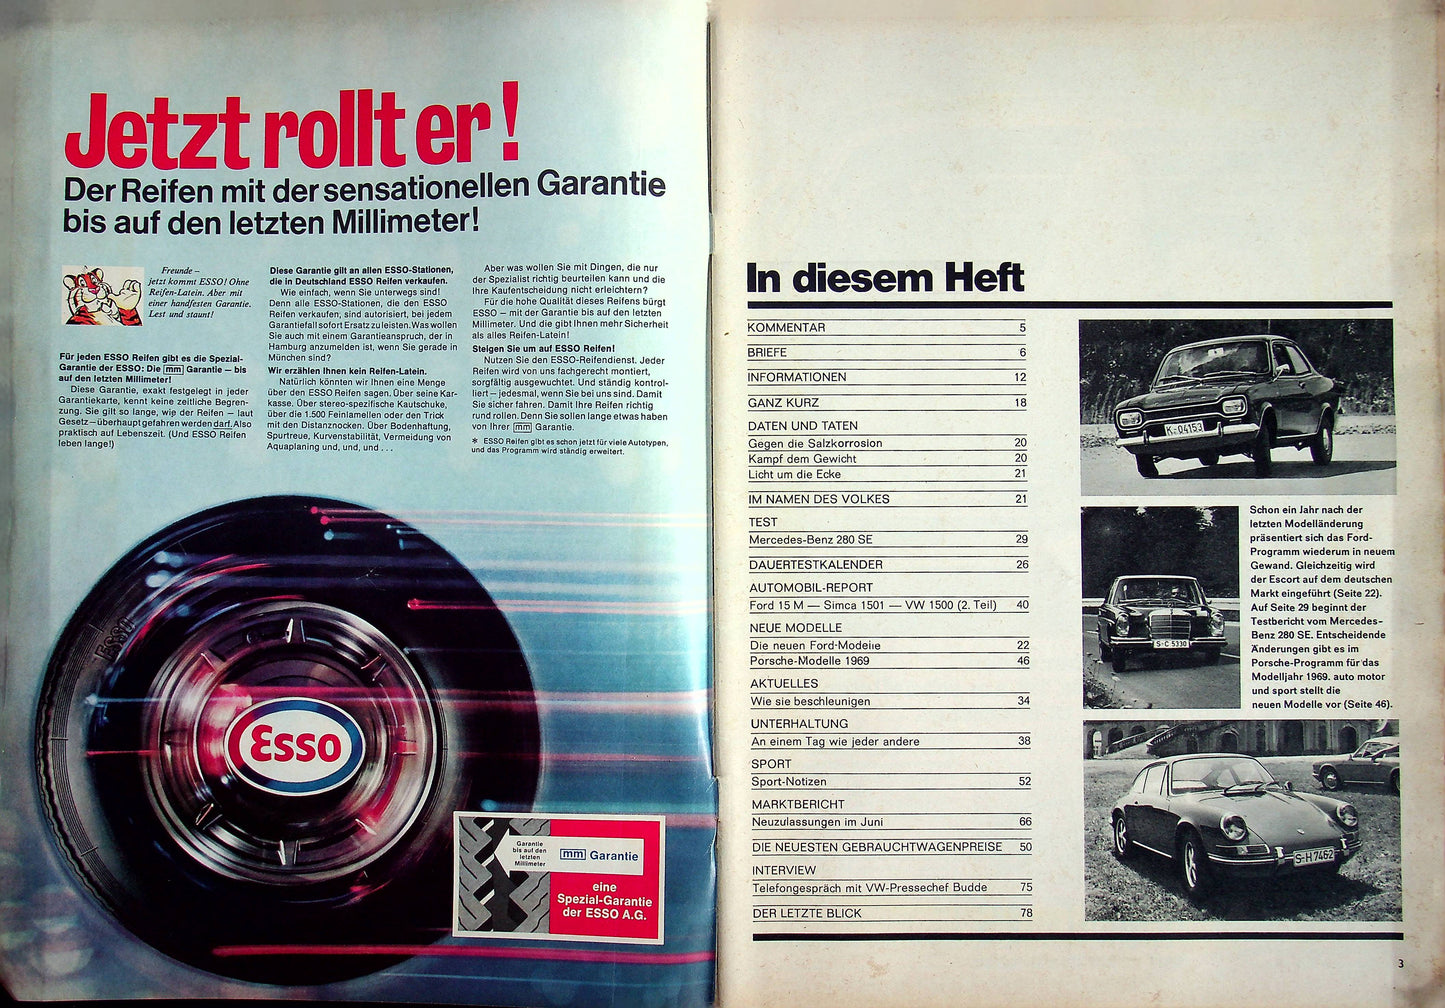 Auto Motor und Sport 18/1968